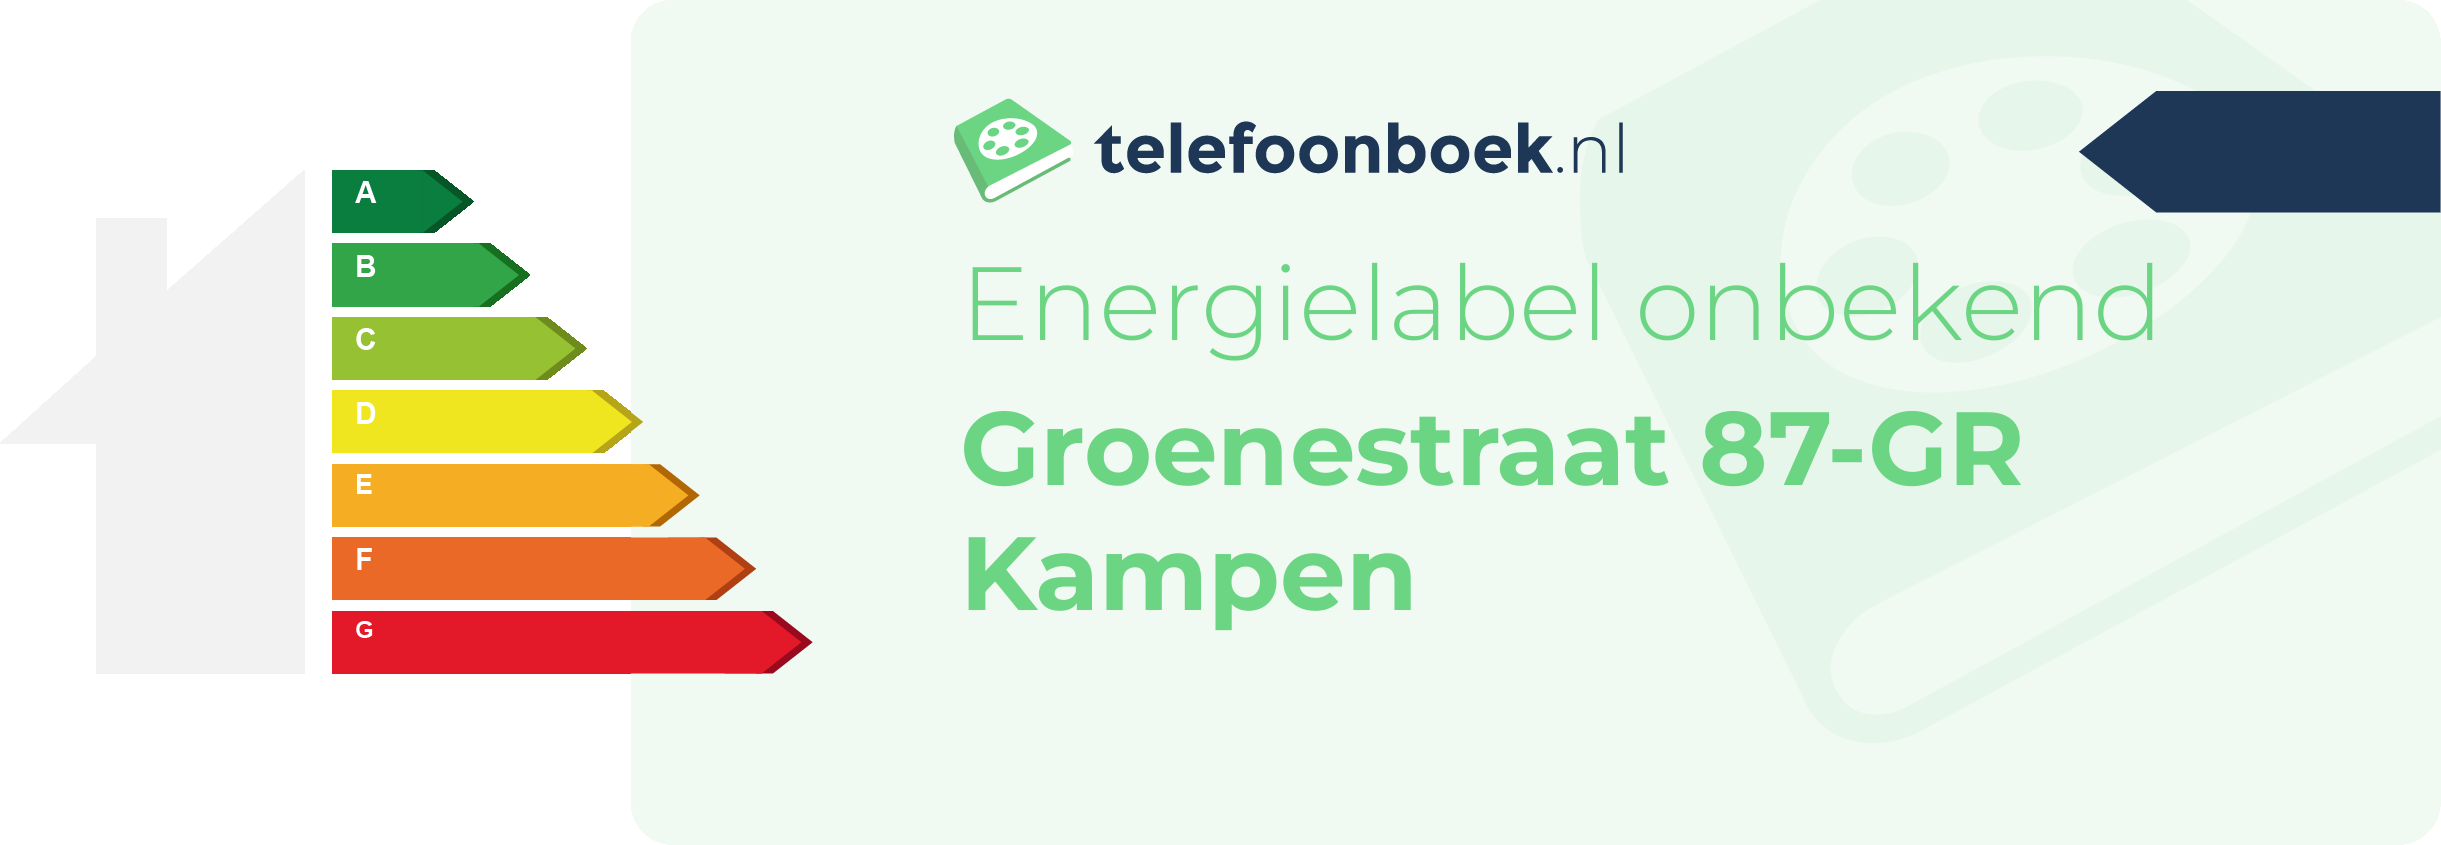 Energielabel Groenestraat 87-GR Kampen